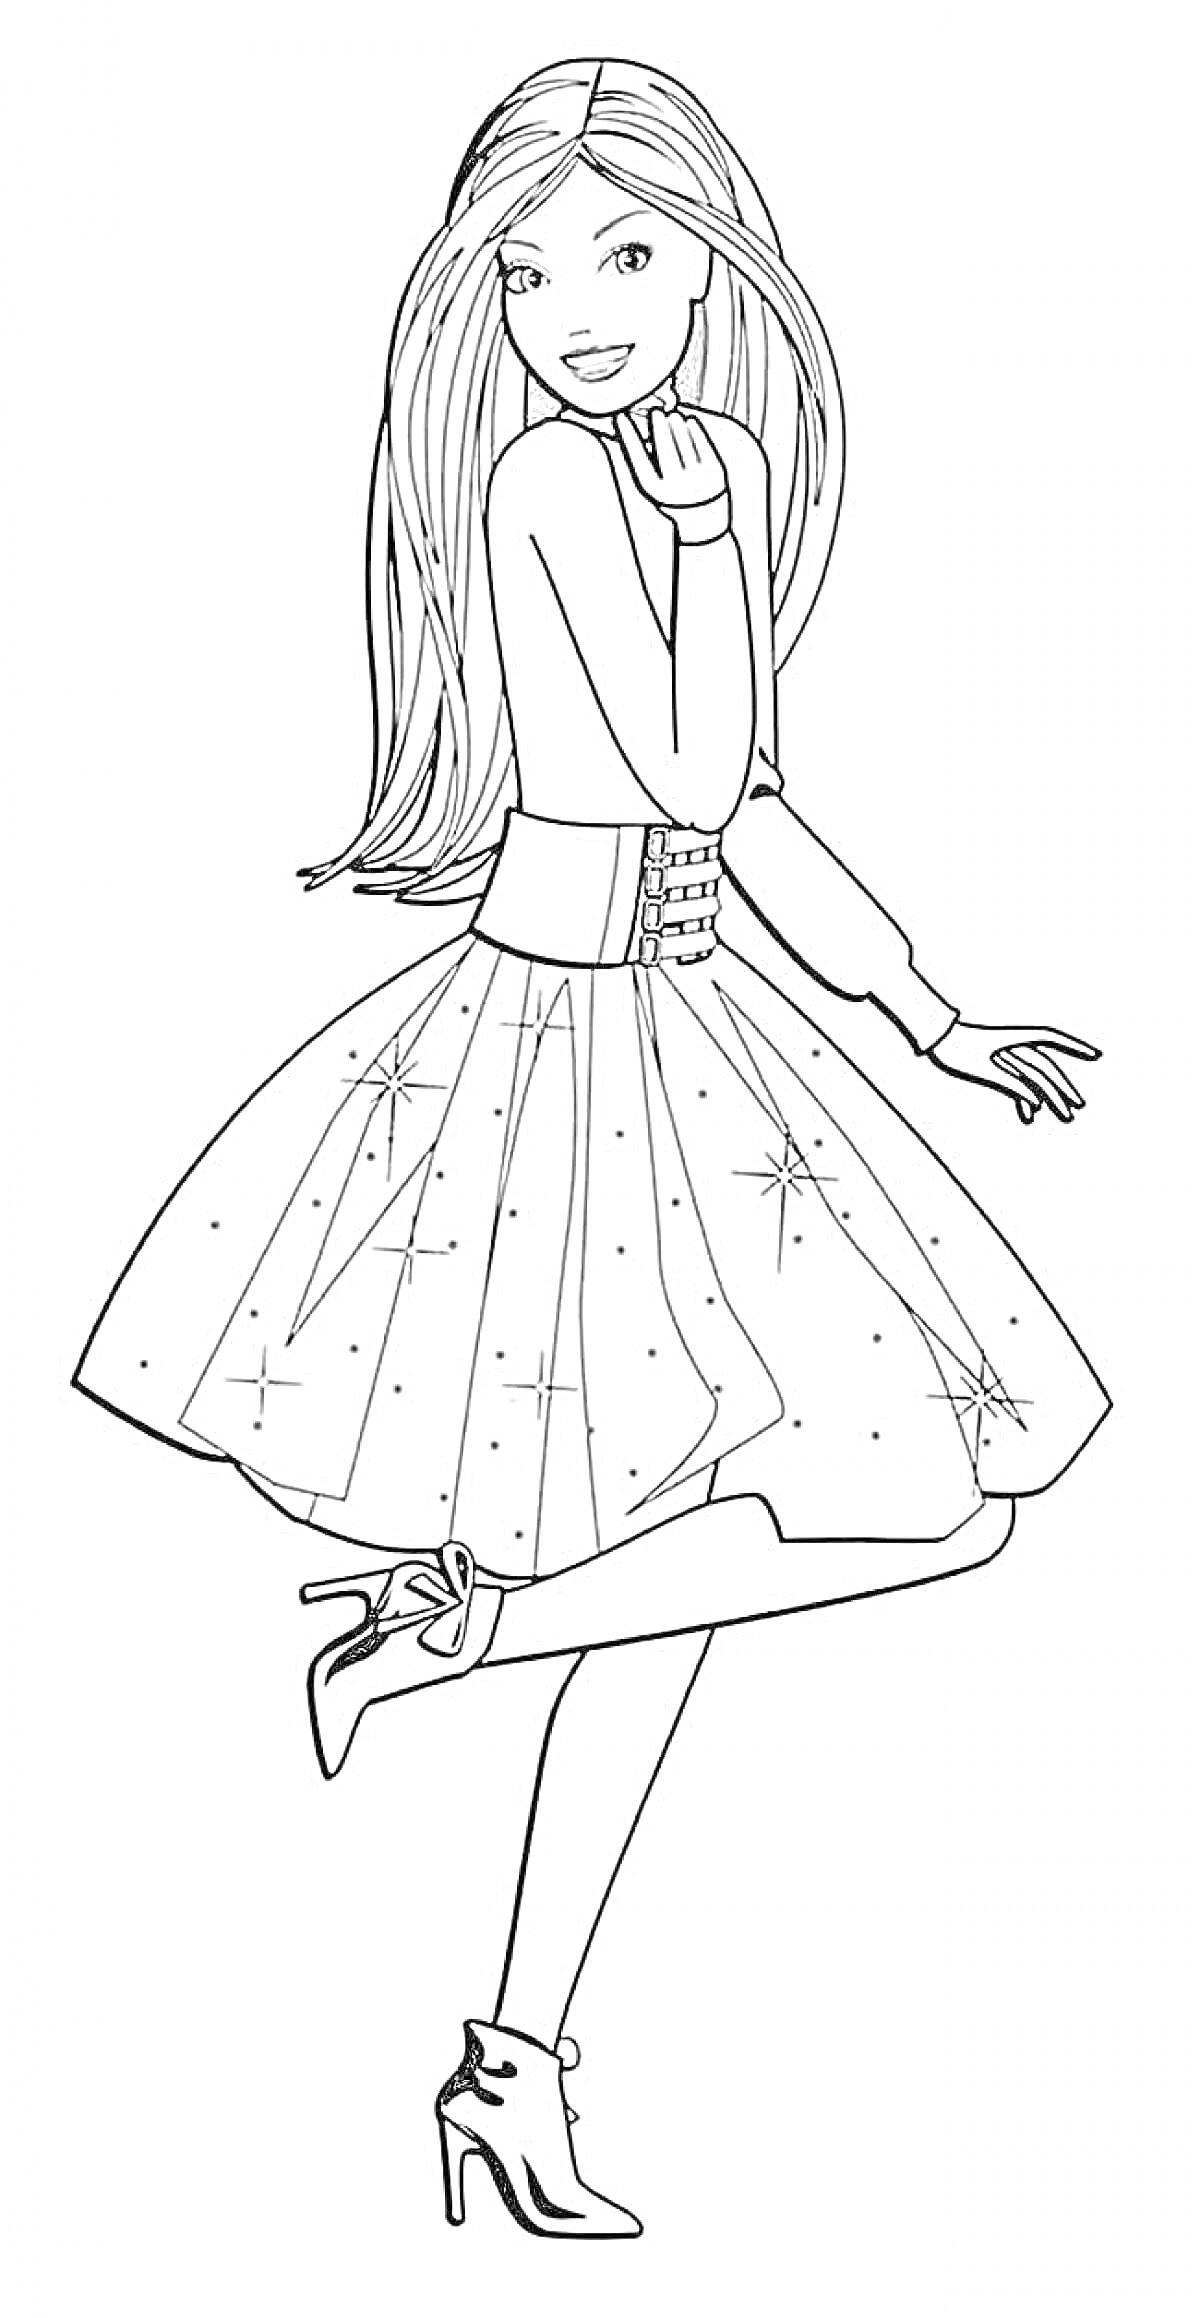 Раскраска Барби в бальном платье с длинными волосами и высокими каблуками